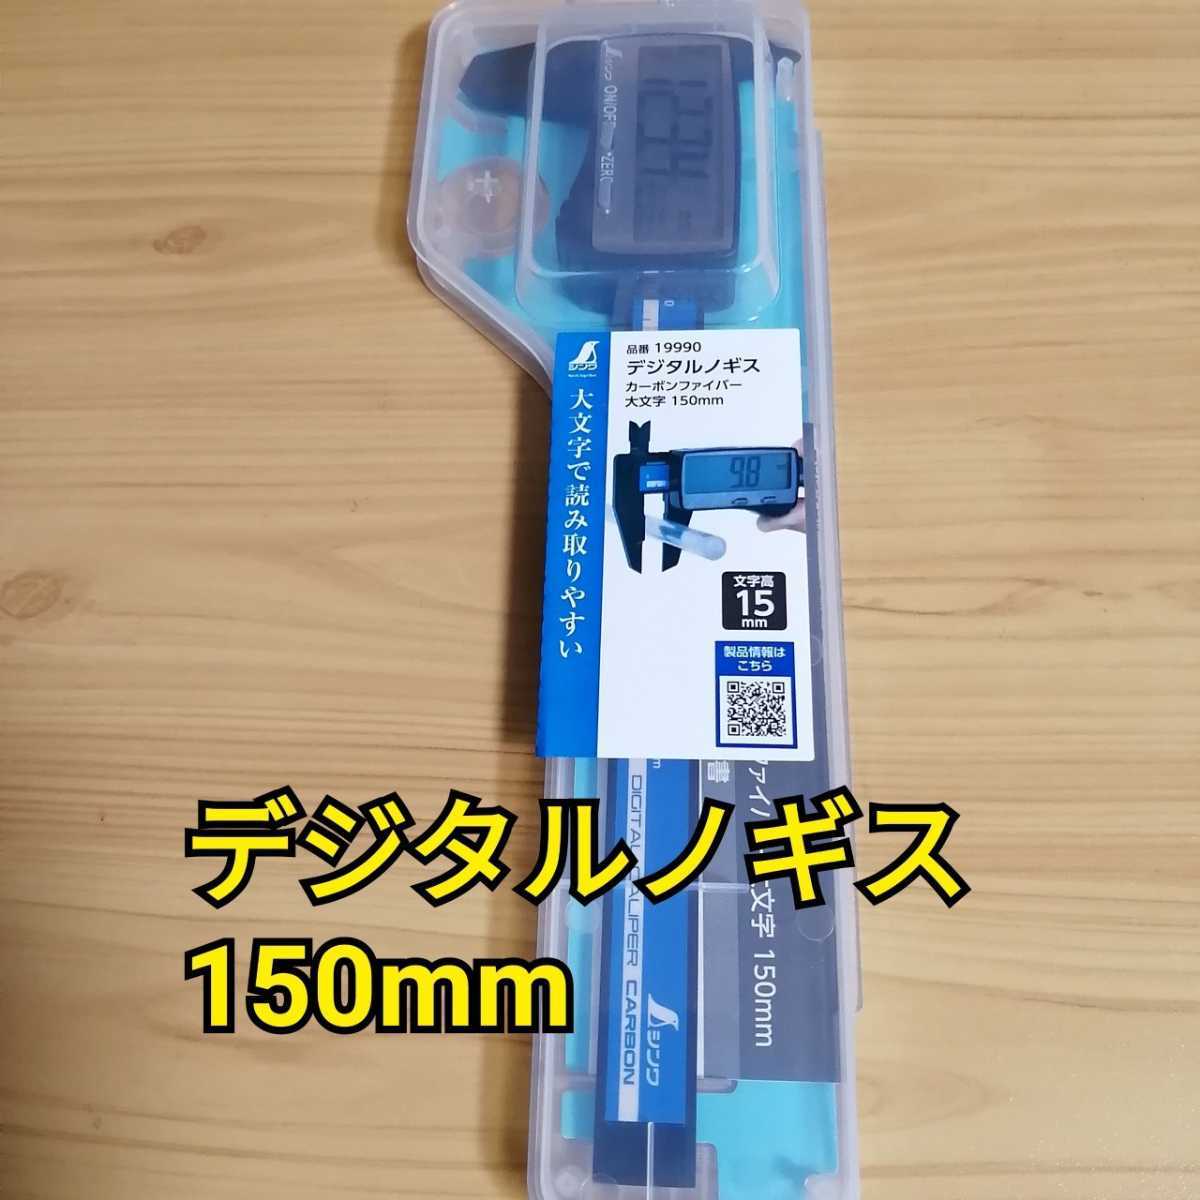 シンワ デジタルノギス 150mm 19990 新品 工具 ノギス 測定器 スケール - smark.su